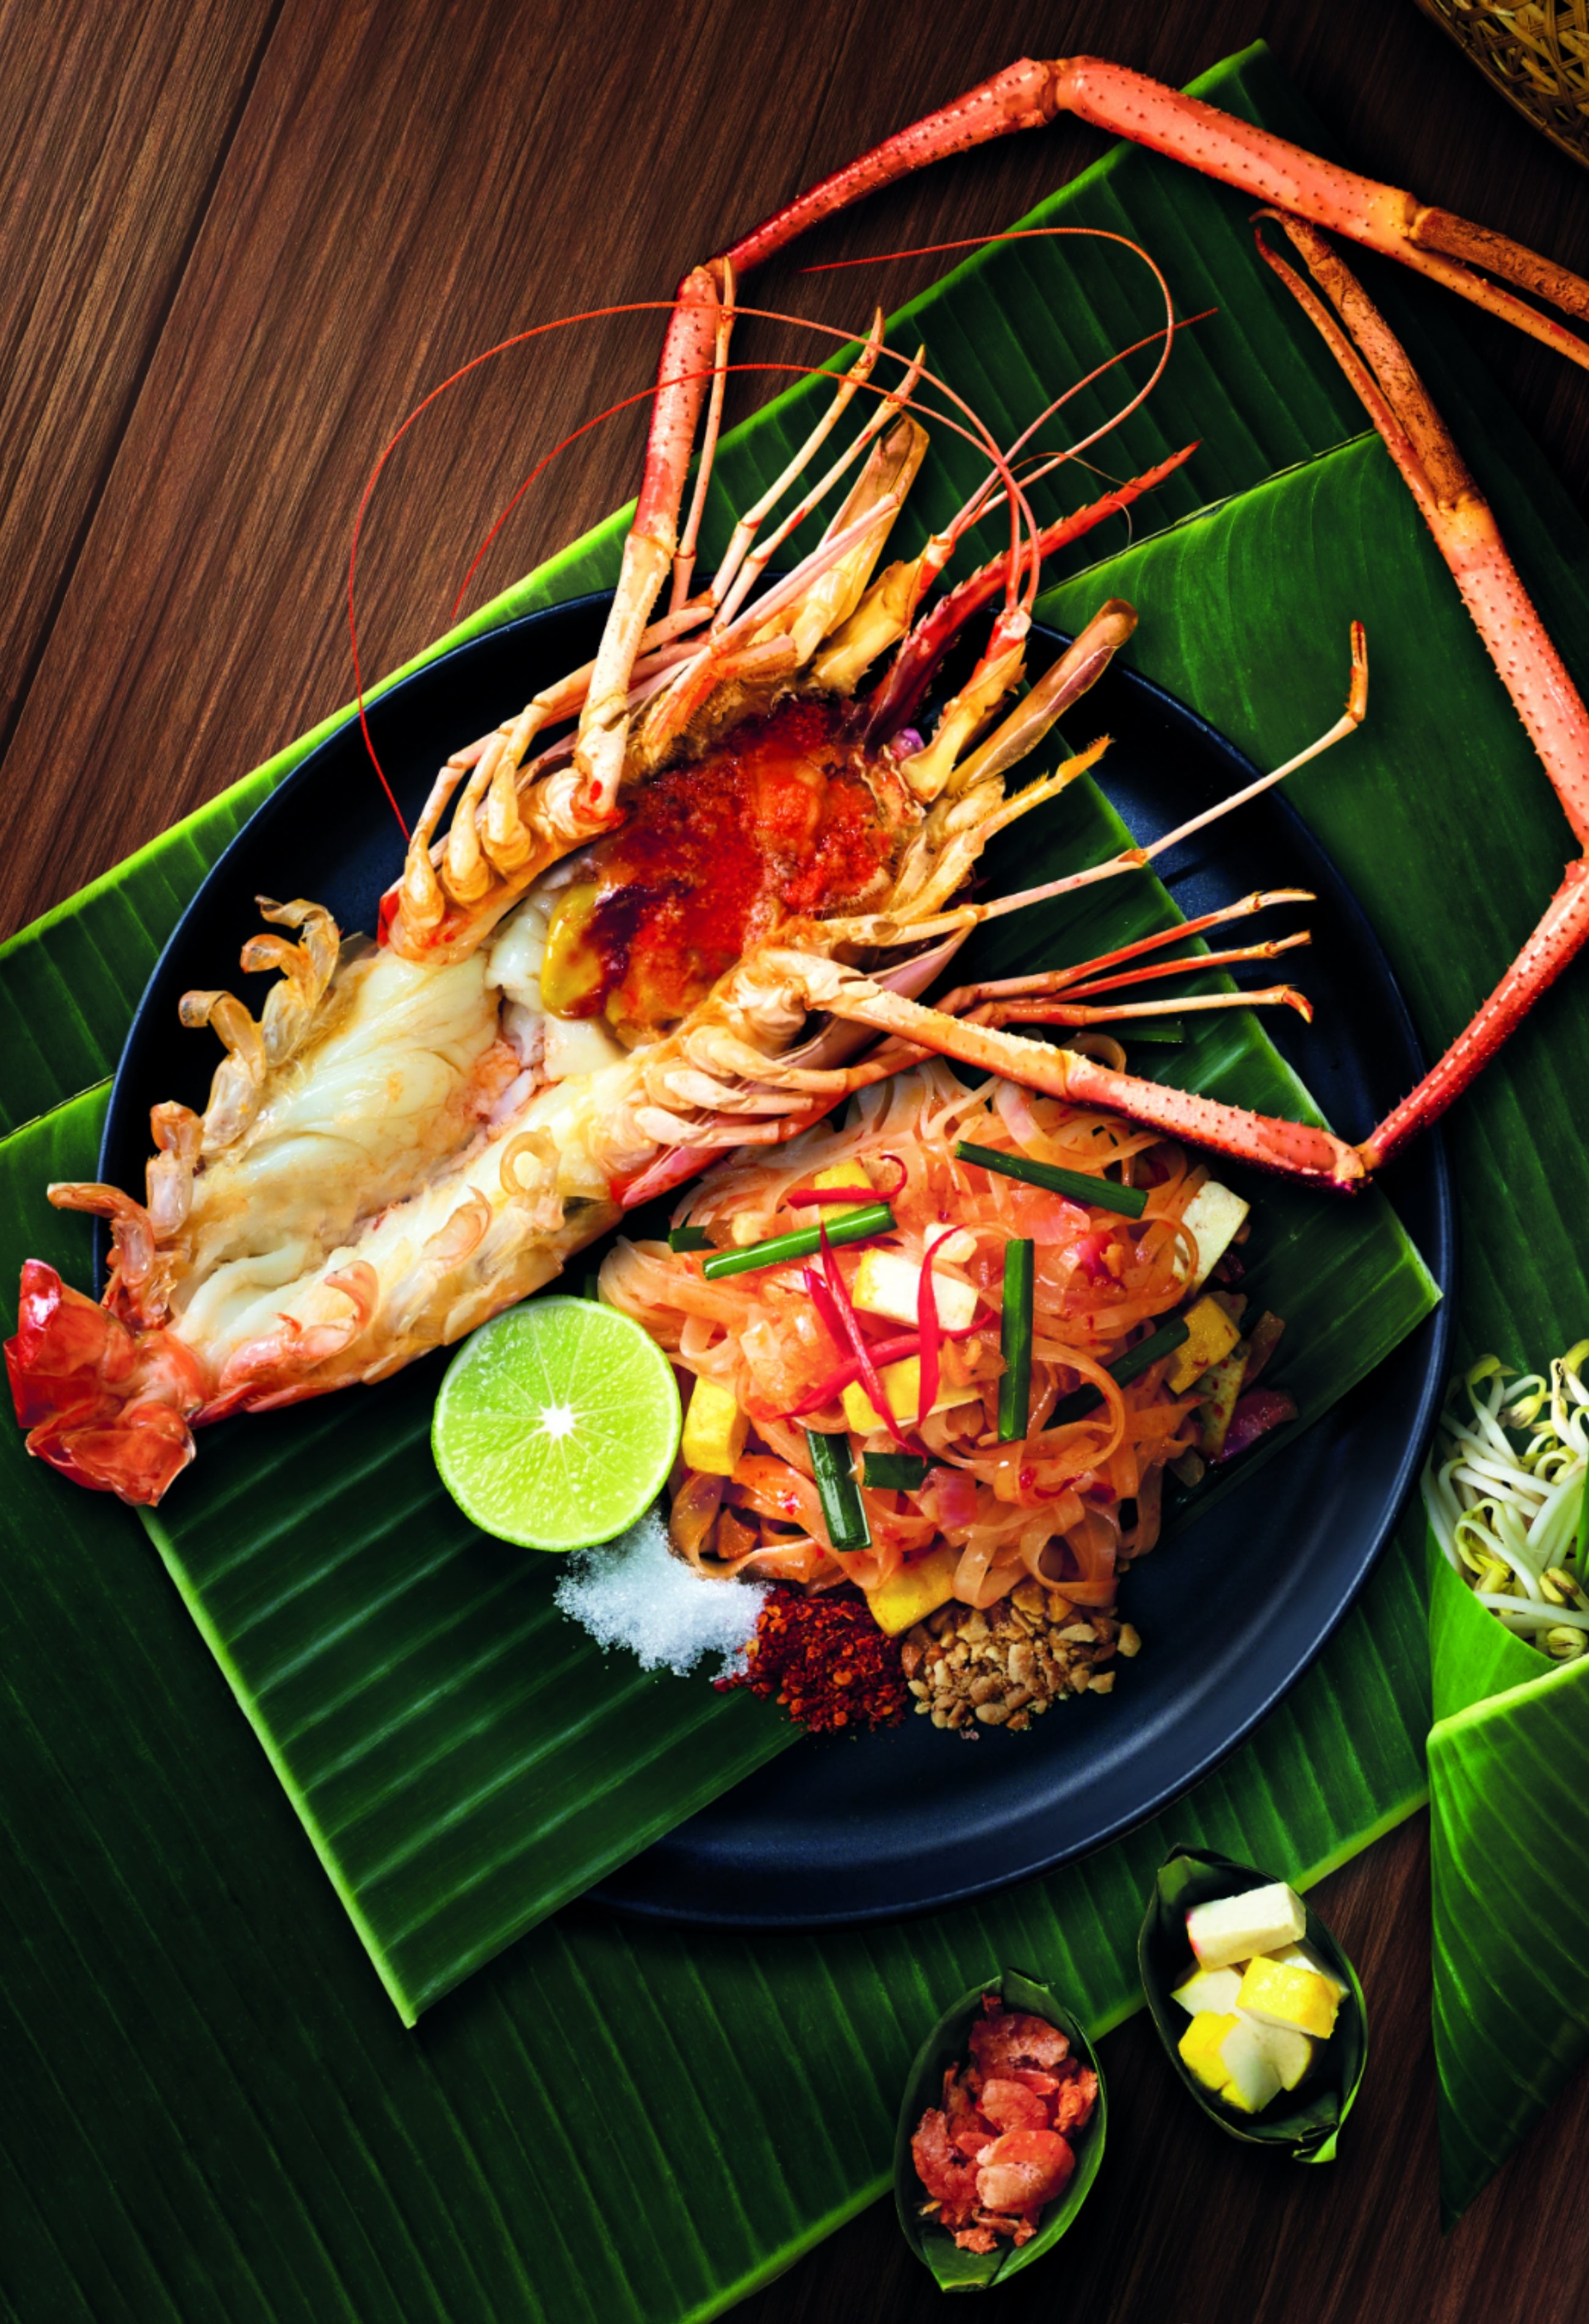 泰国鱼菜单 库存照片. 图片 包括有 饭食, 可口, 鲜美, 泰国, 调味汁, 菜单, 普遍, 美味 - 94559608